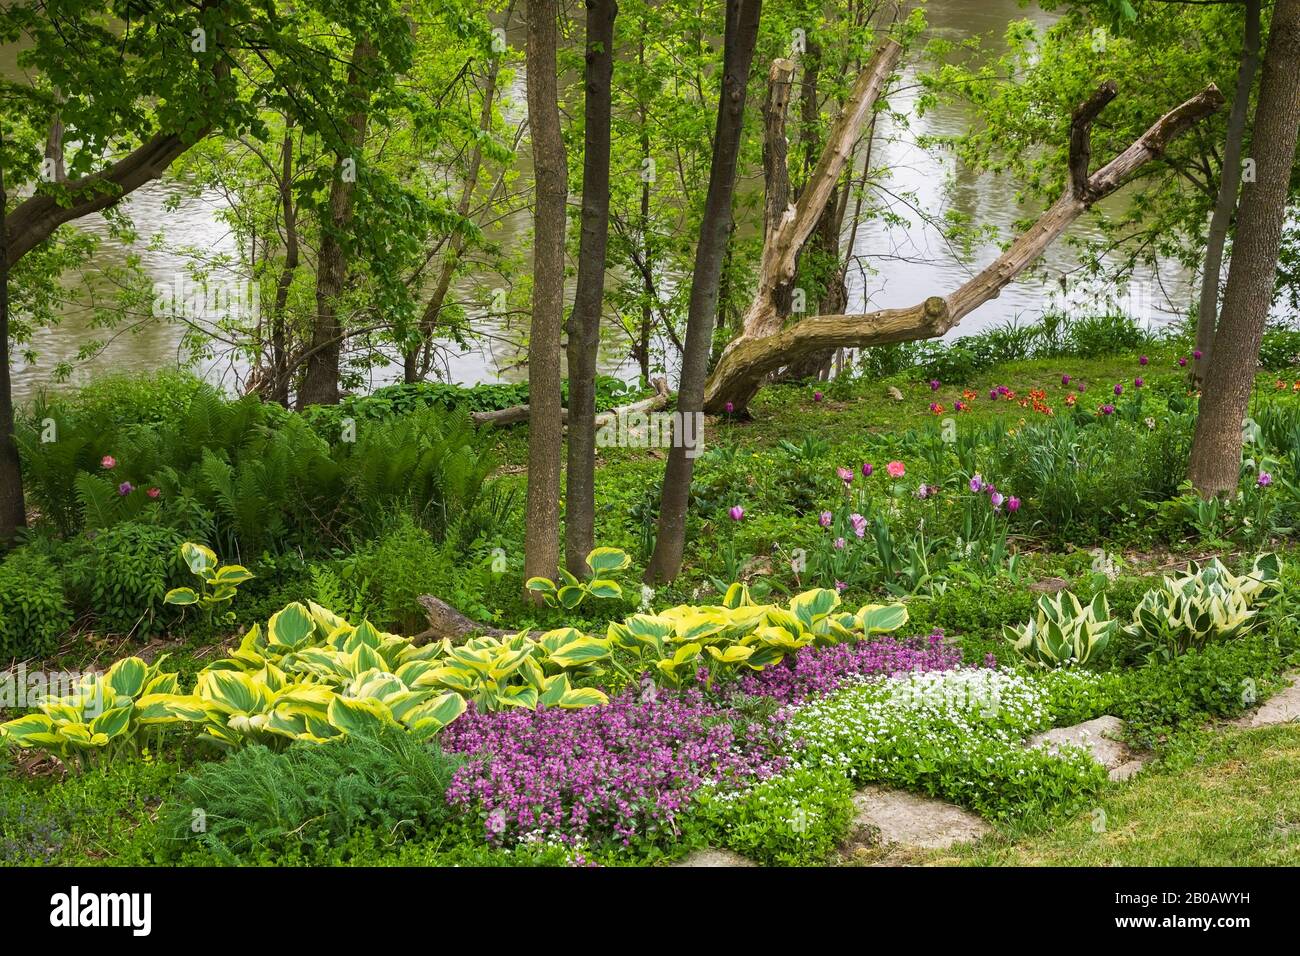 Gartengrenze mit weißer Asperula odorata - Woodruff-Blumen, Purpurlamium, - Deadnessel- und Hosta-Pflanzen im Frühjahr in geschlitztem Hinterhofgarten. Stockfoto